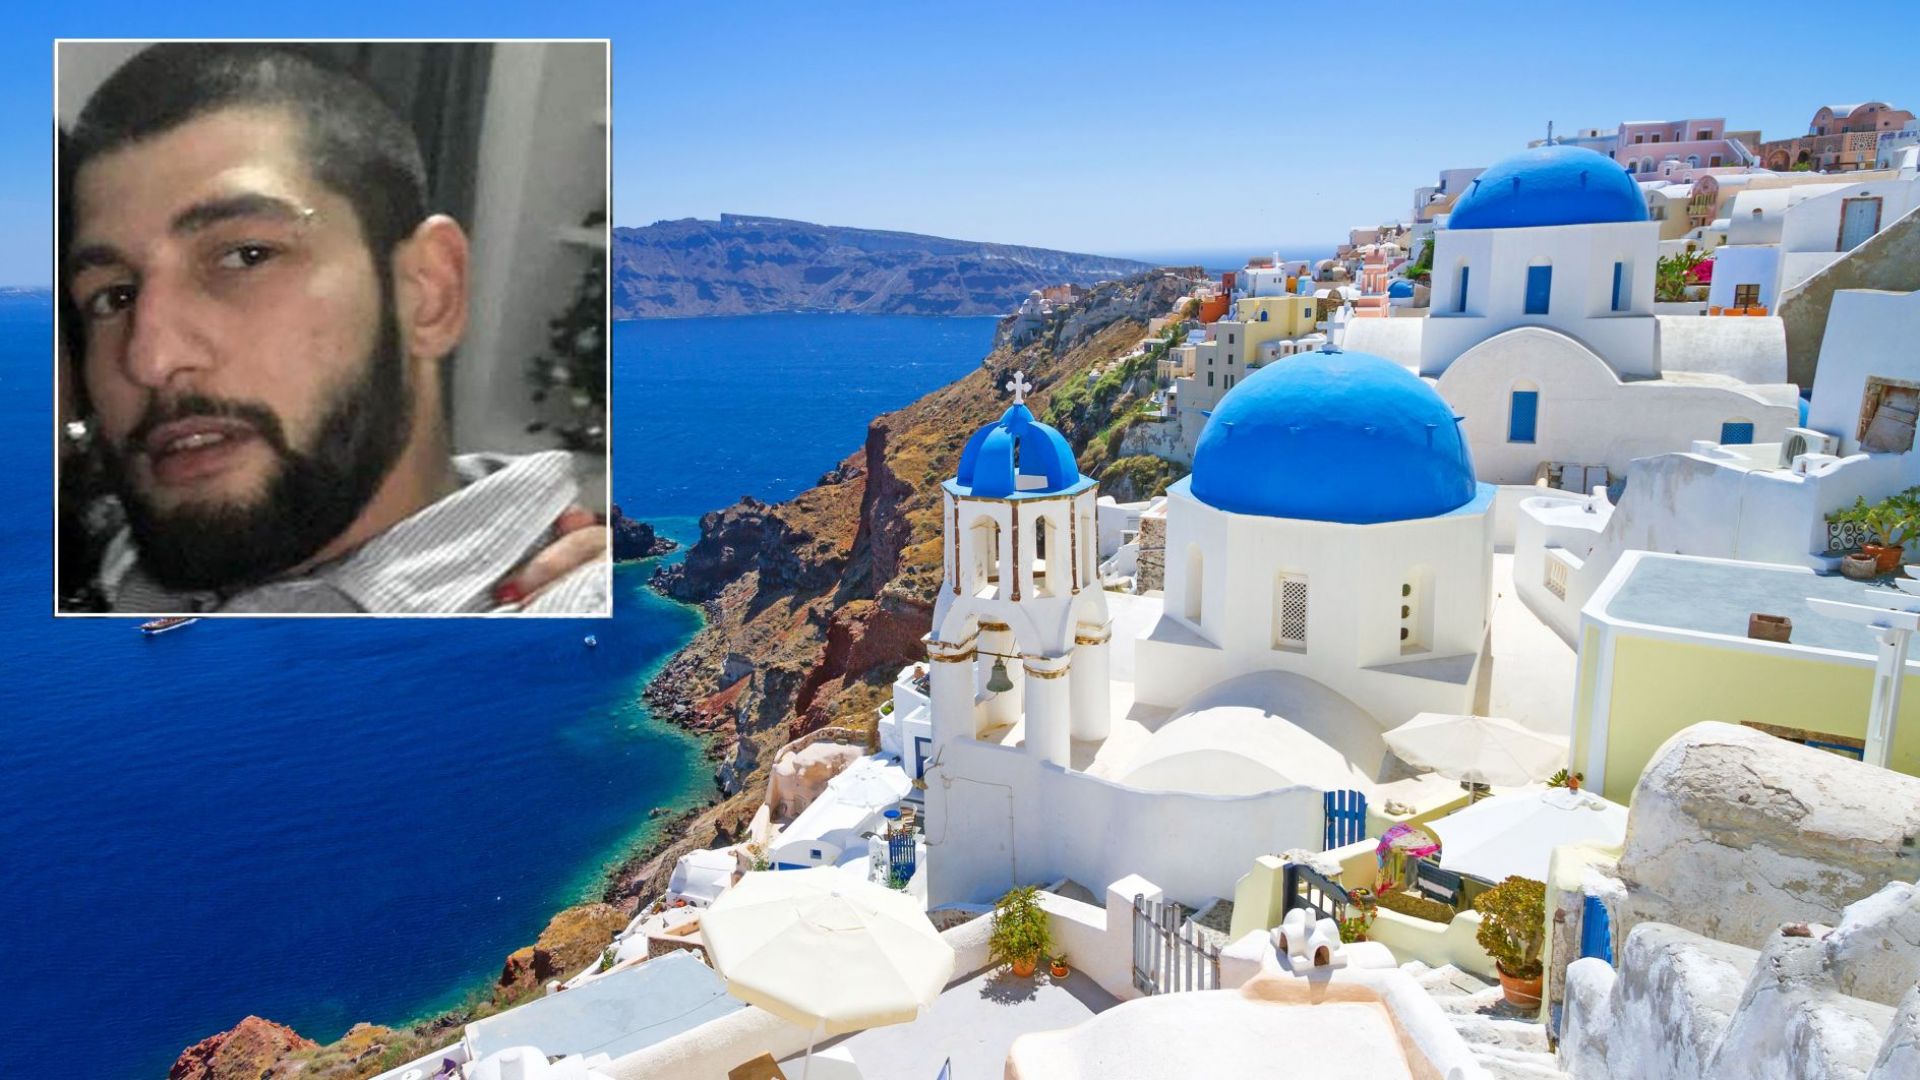 Българин изчезна мистериозно на гръцкия остров Санторини Йордан Станев Динев